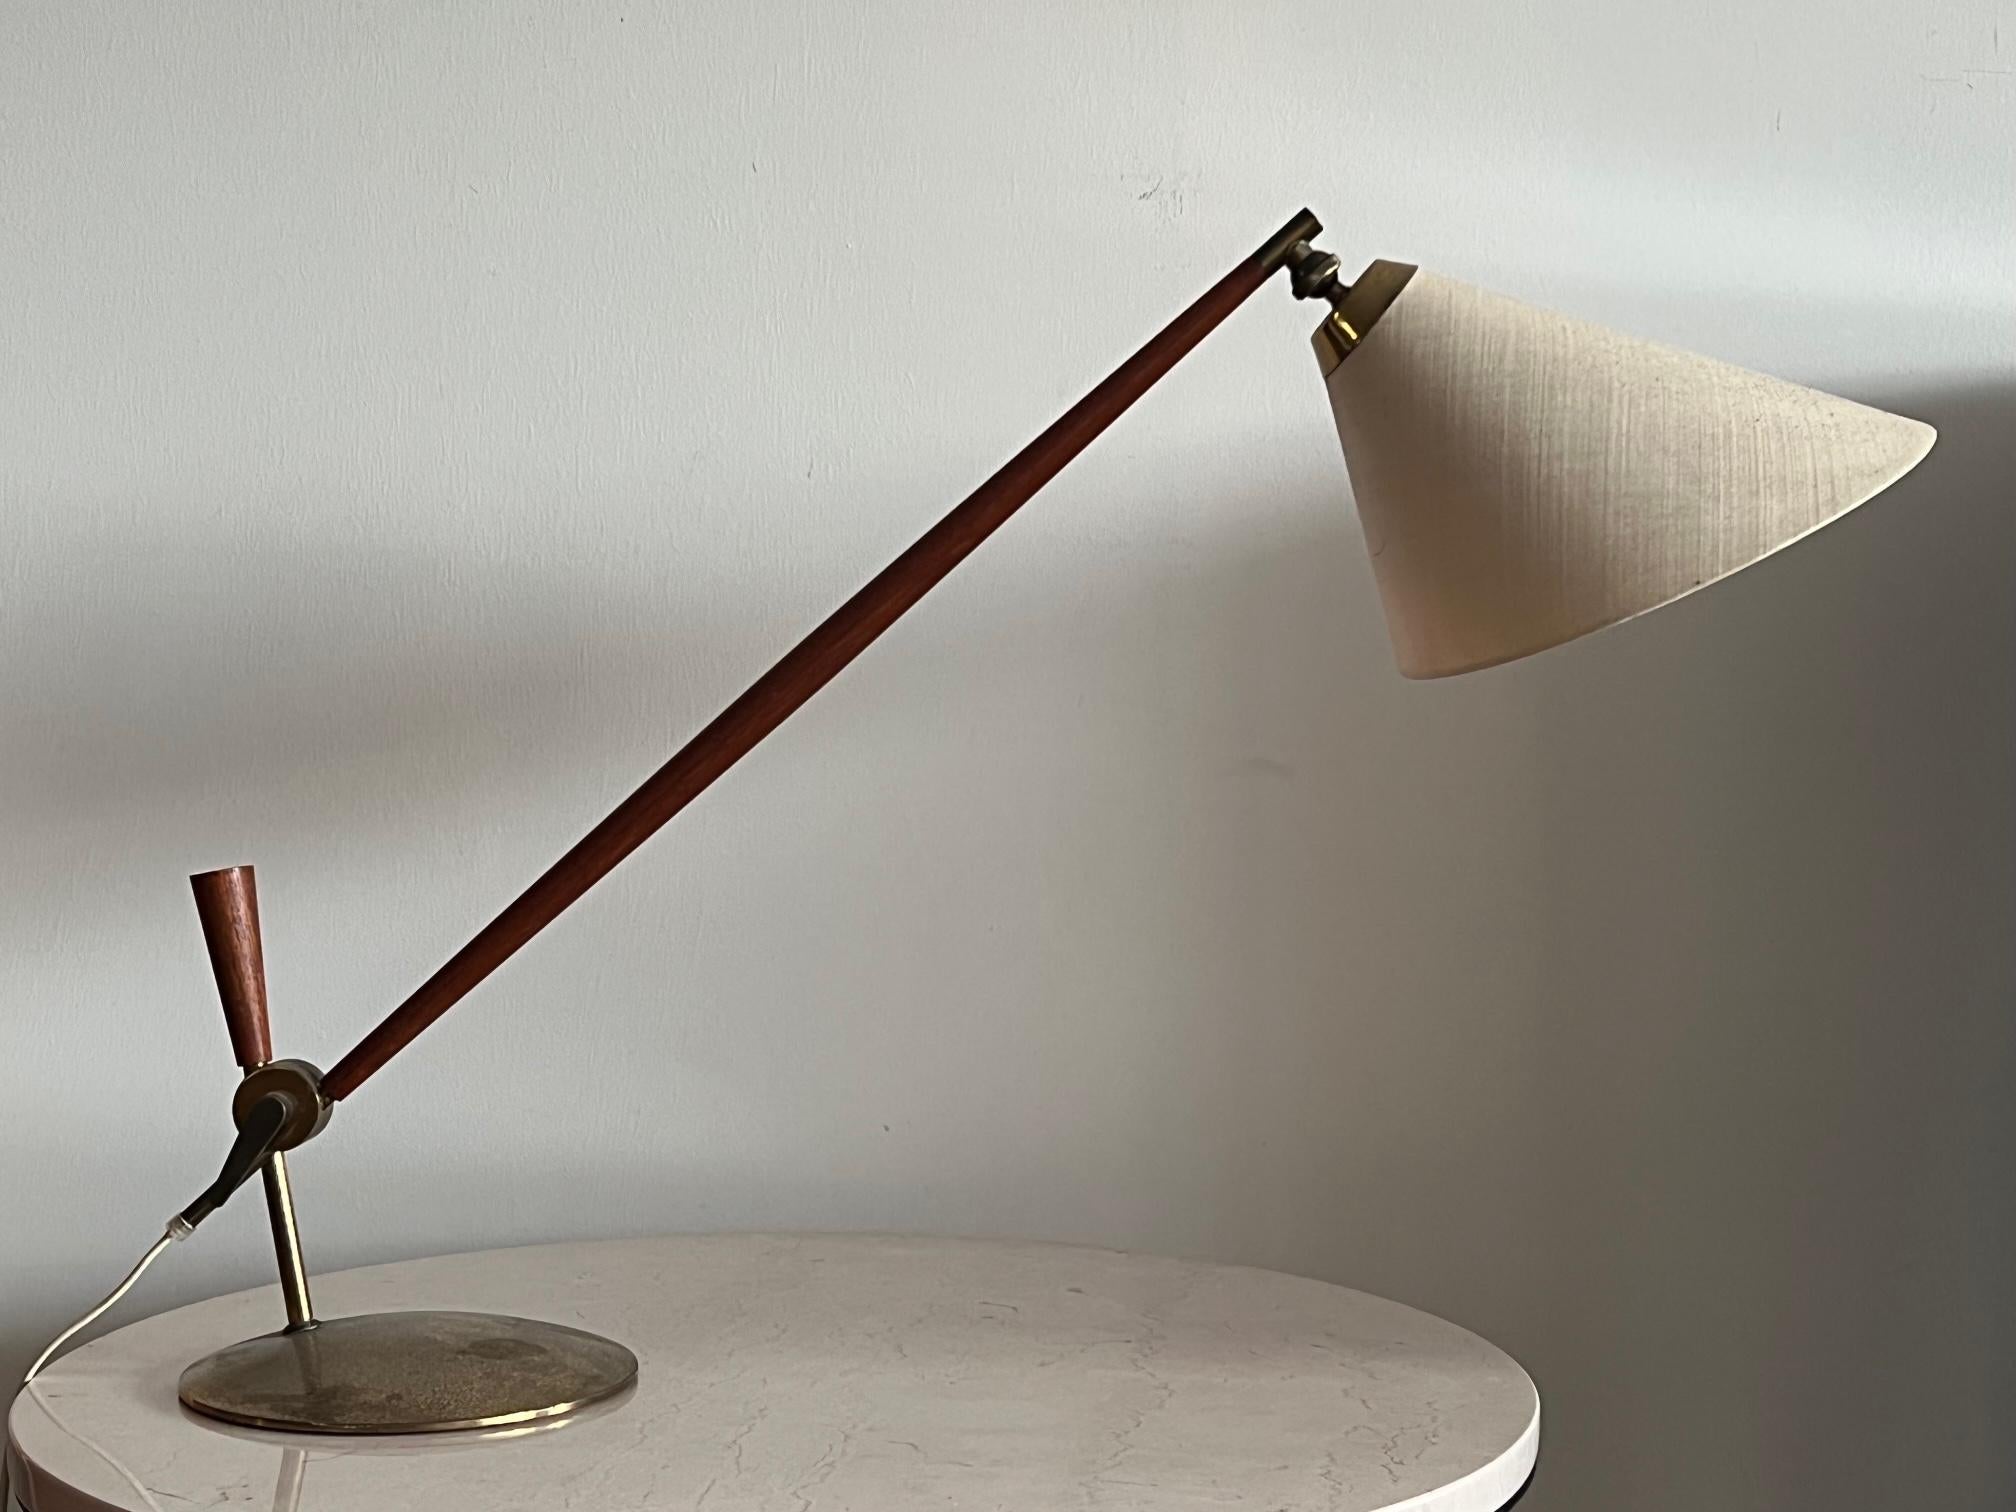 Une lampe de table inhabituelle des années 1950 conçue par Thomas Valentiner pour Poul Dinesen. Laiton et teck avec abat-jour d'origine.
Le laiton est patiné et oxydé.